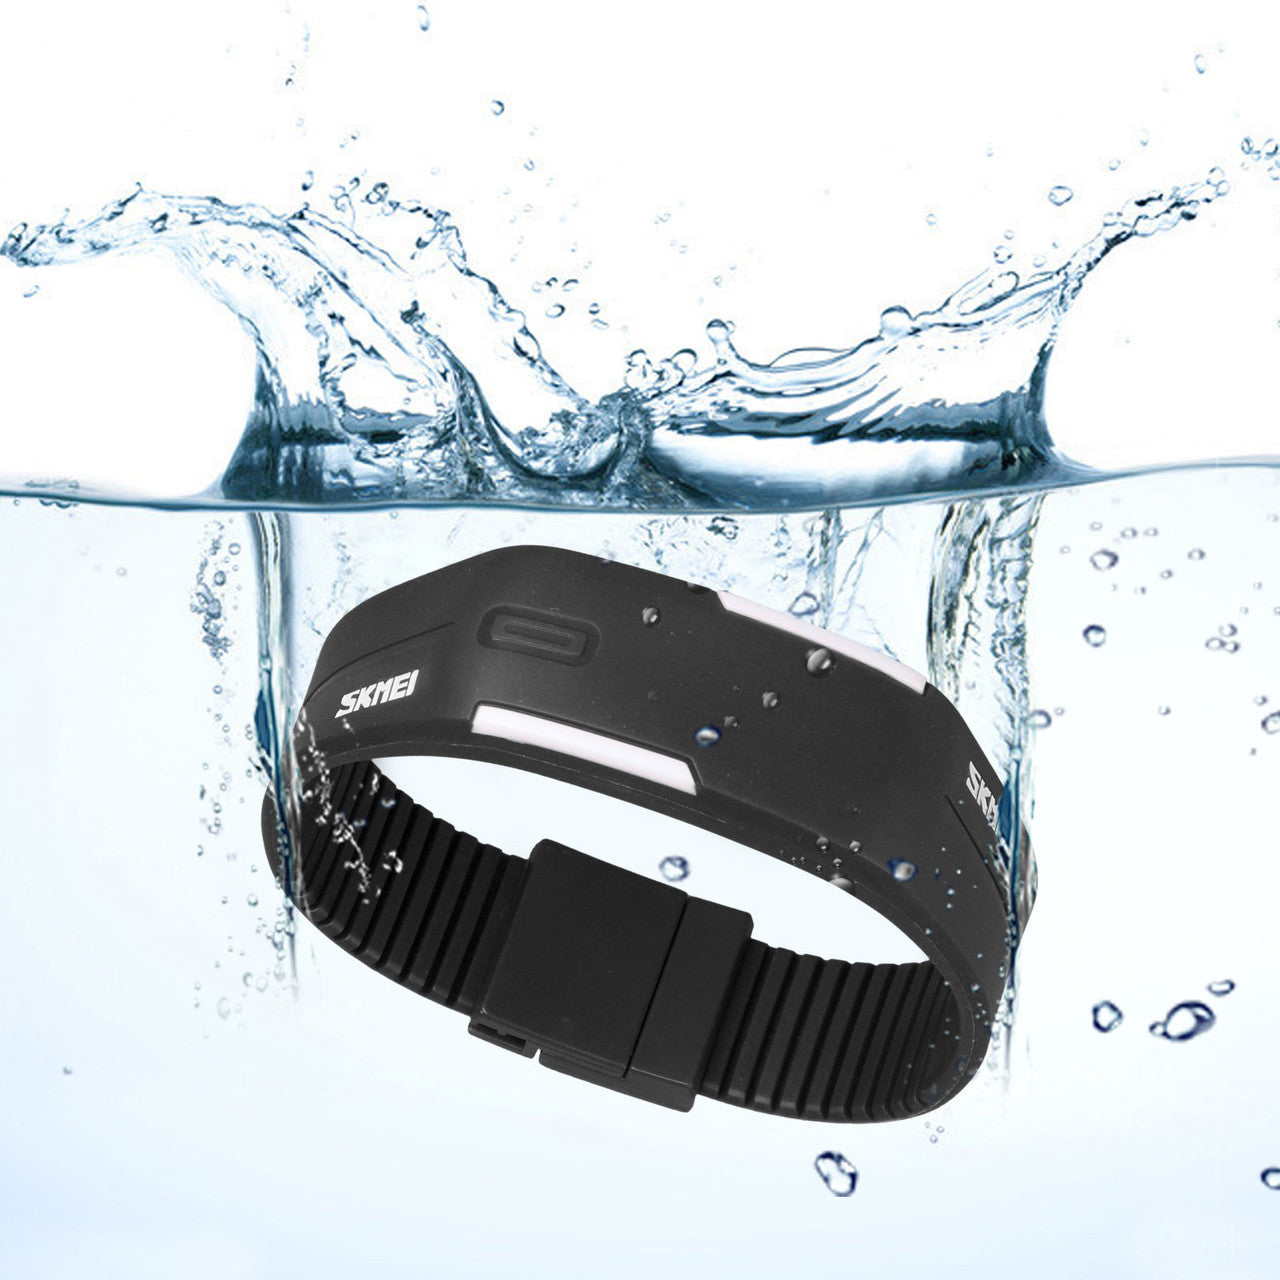 Silicone Waterproof LED Digital Sport Wristwatch Men Women Bracelet Watch, Atomatic Shut-Down Noise-free 30M Water Resistant shock/Scratch Resistant, Black